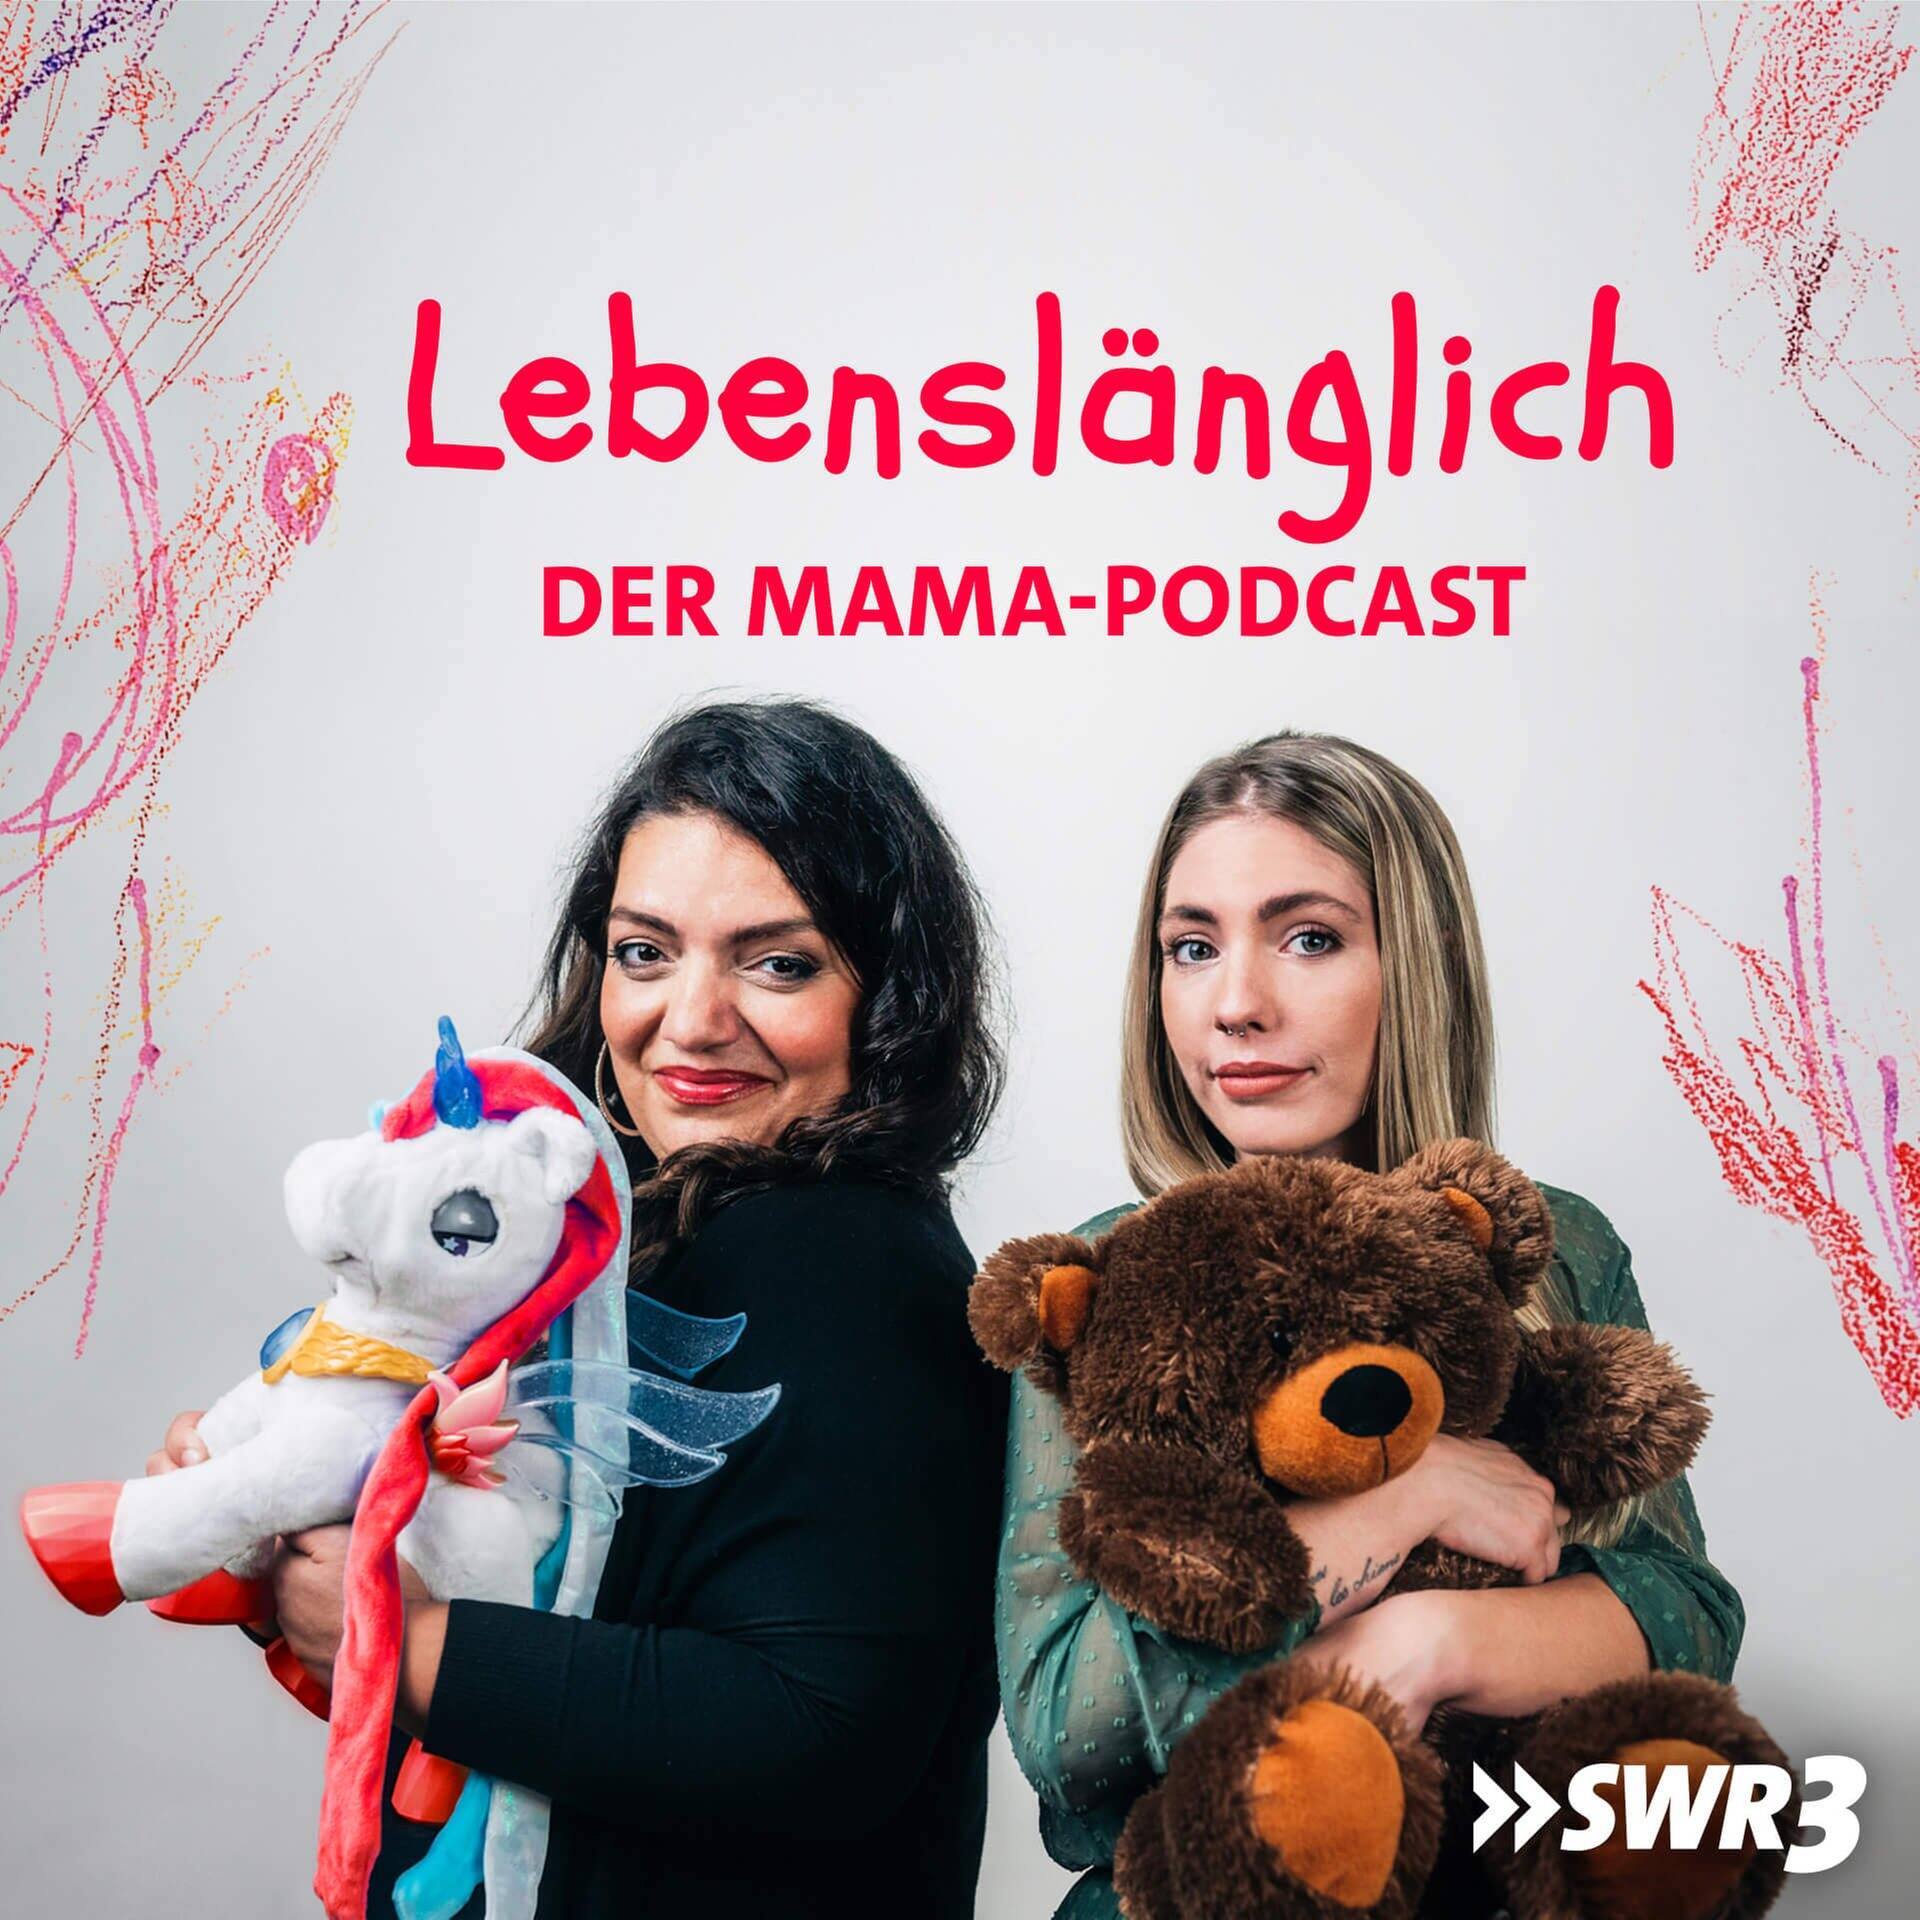 Lebenslänglich – der Mama-Podcast